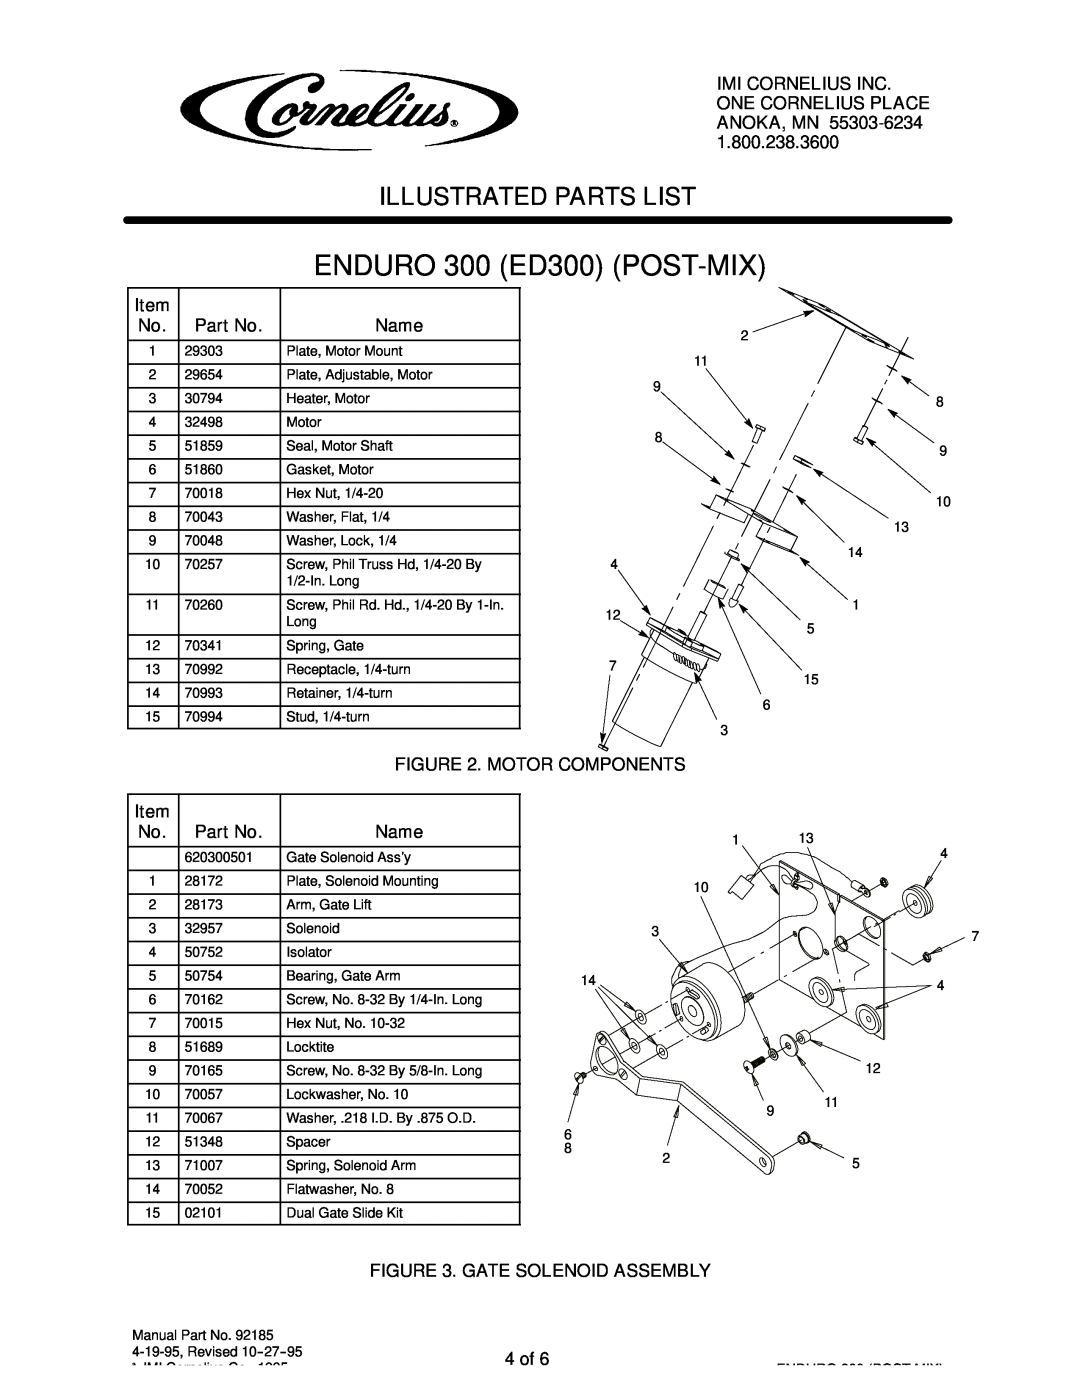 Cornelius ENDURO 300 (ED300) manual ENDURO 300 ED300 POST-MIX, Illustrated Parts List 